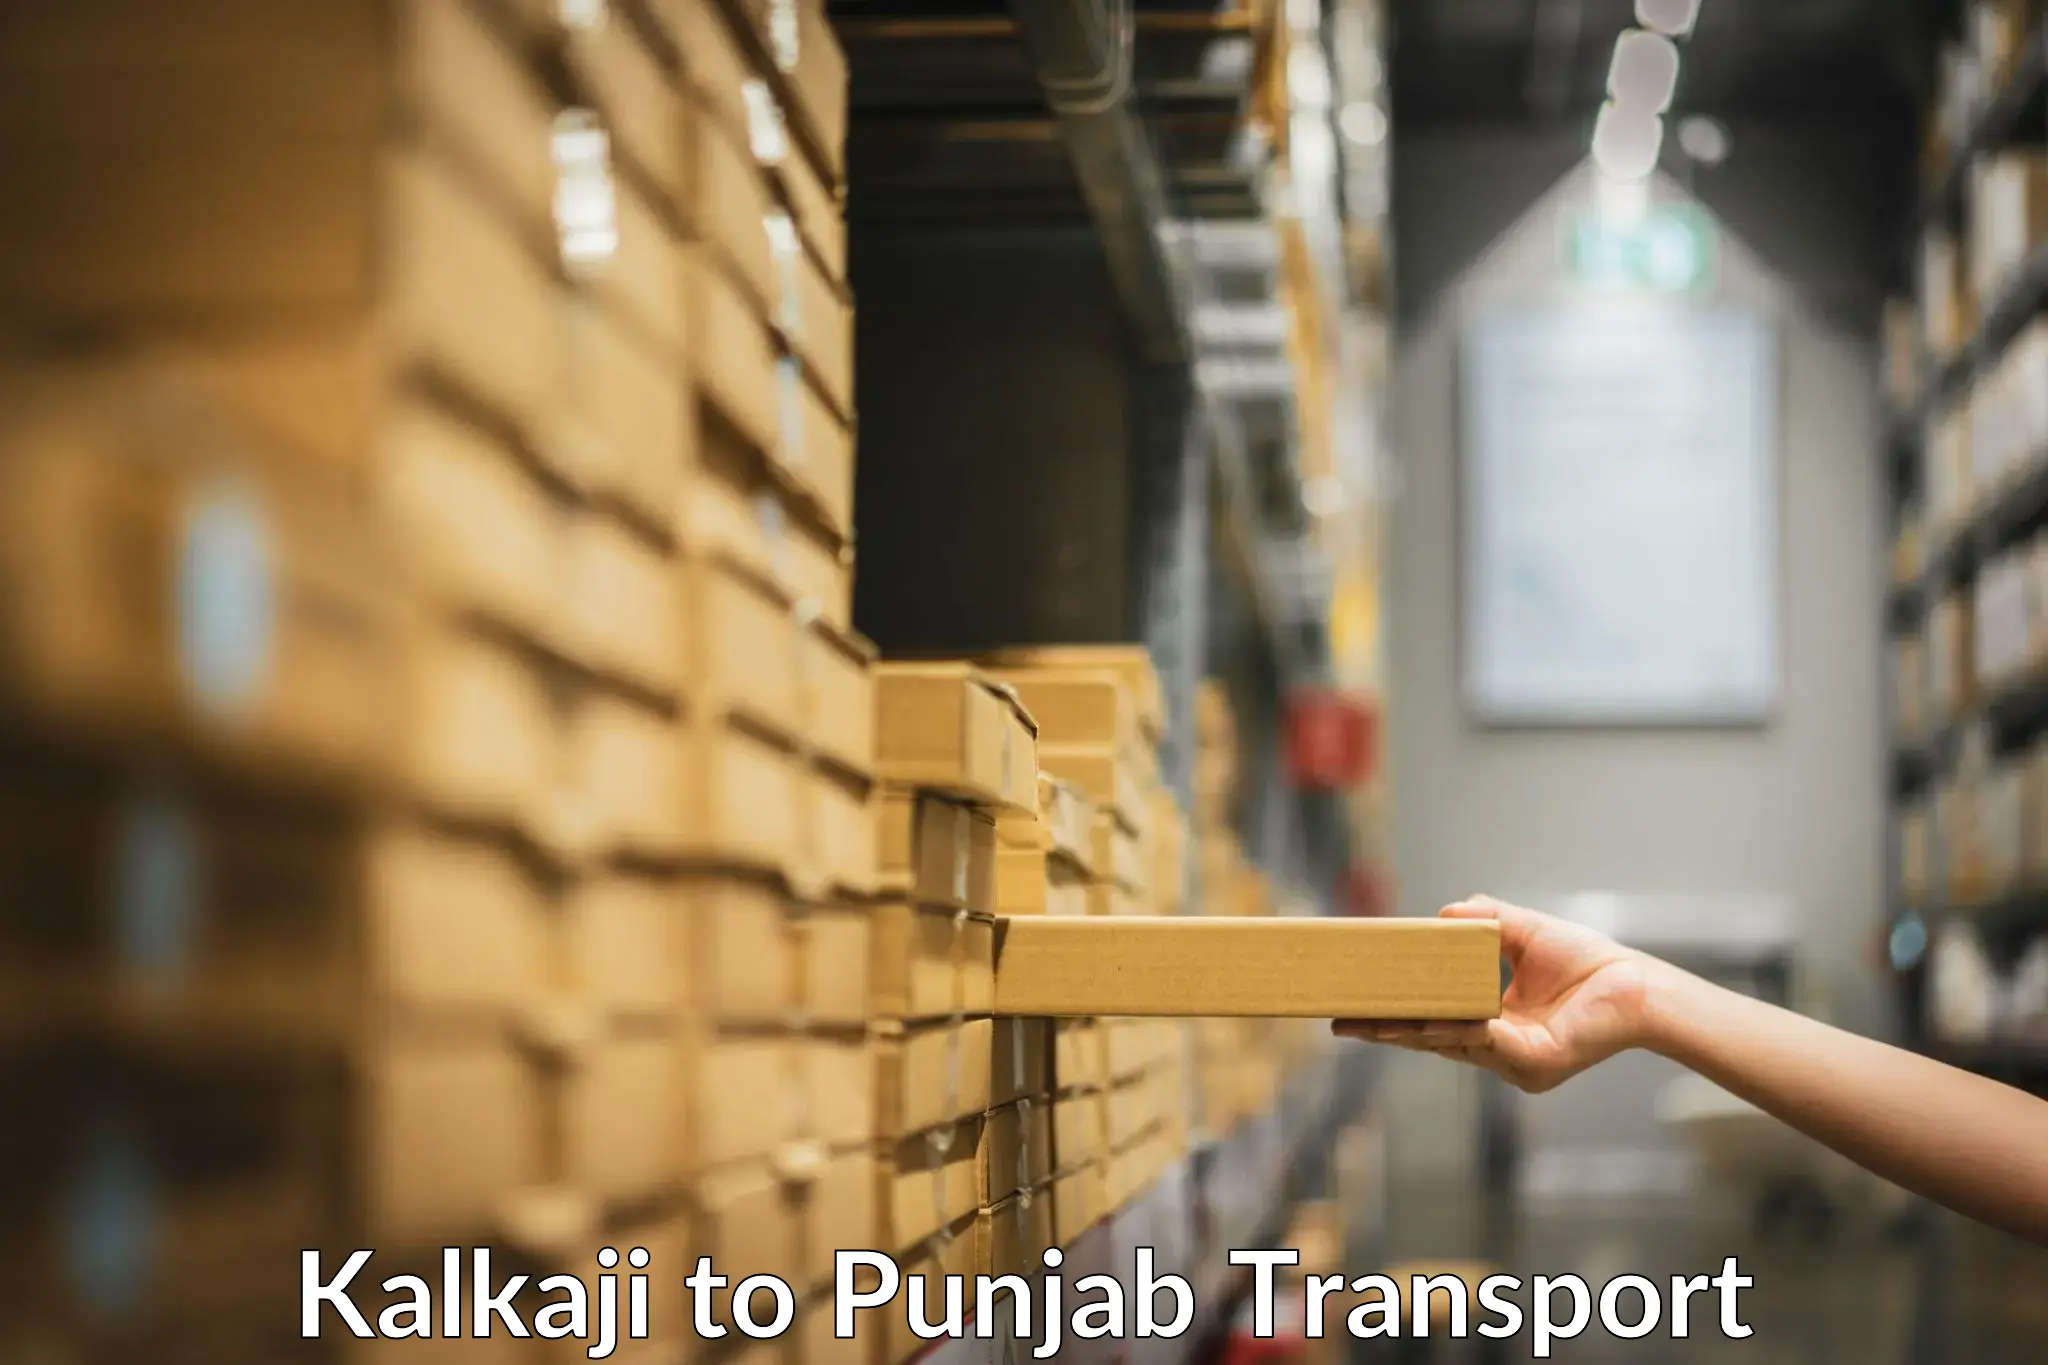 Container transportation services Kalkaji to Rupnagar